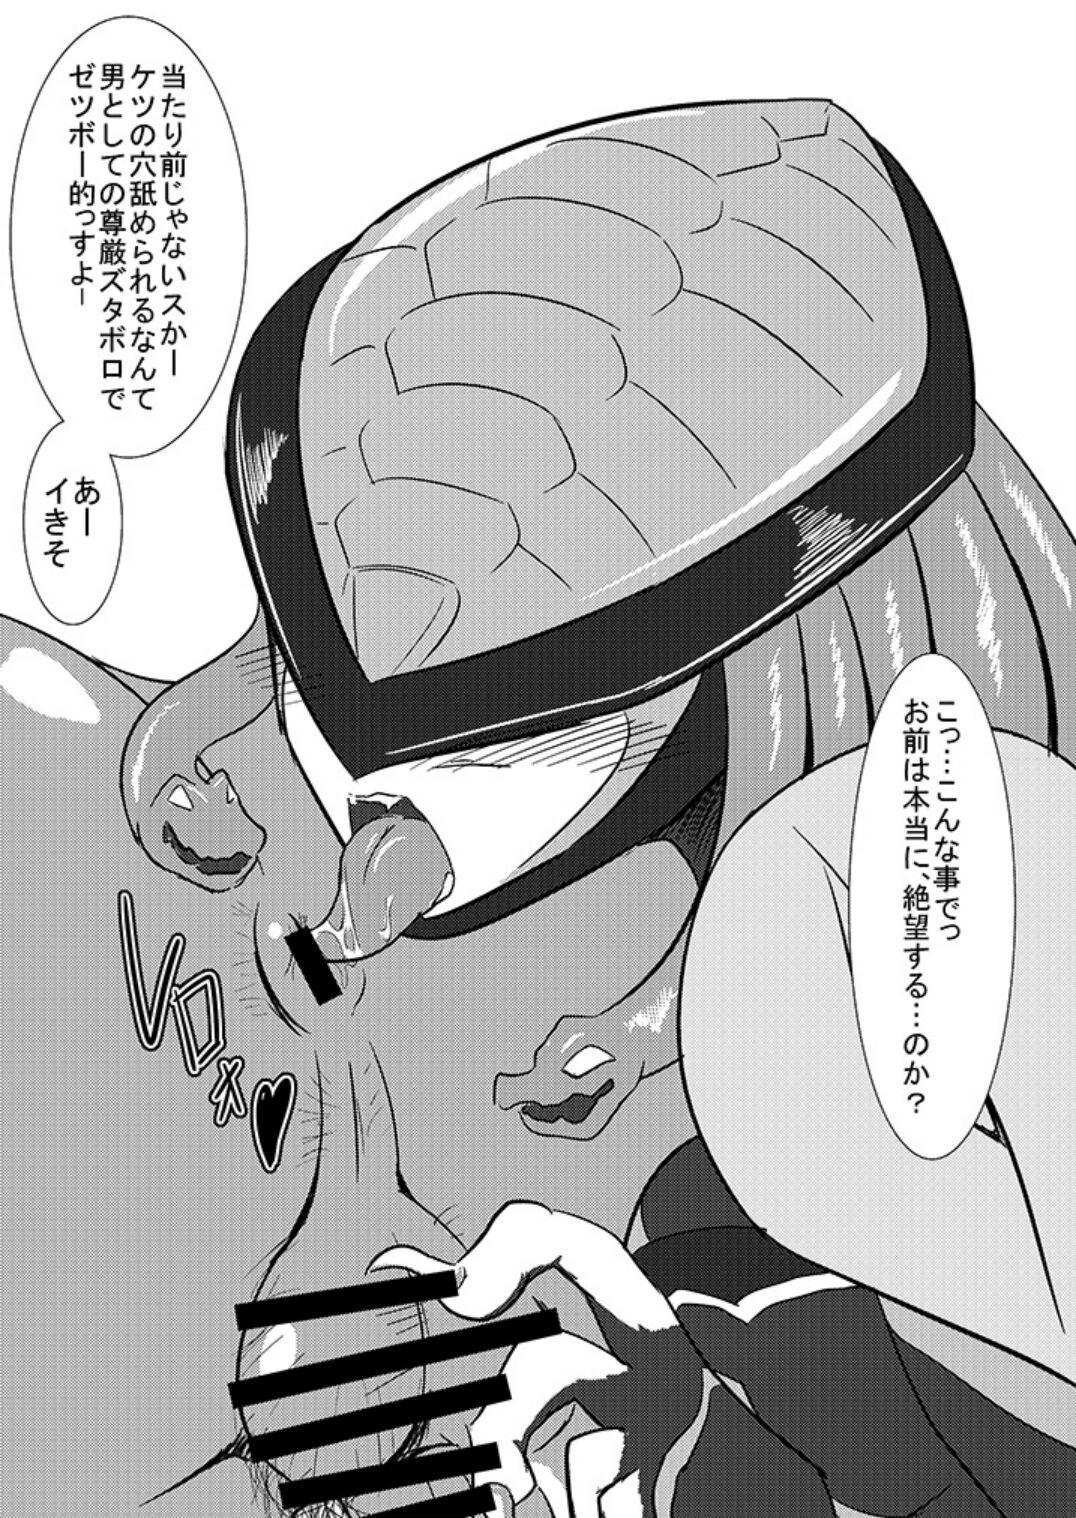 Workout Midoshinanode mede~yu￮sa-sama o ijime nuite mita! (2013) Kamen rai￮ ̄u~iza ￮ do o ￮ zu​ - Kamen rider Kamen rider wizard Kamen rider ooo Jocks - Page 6